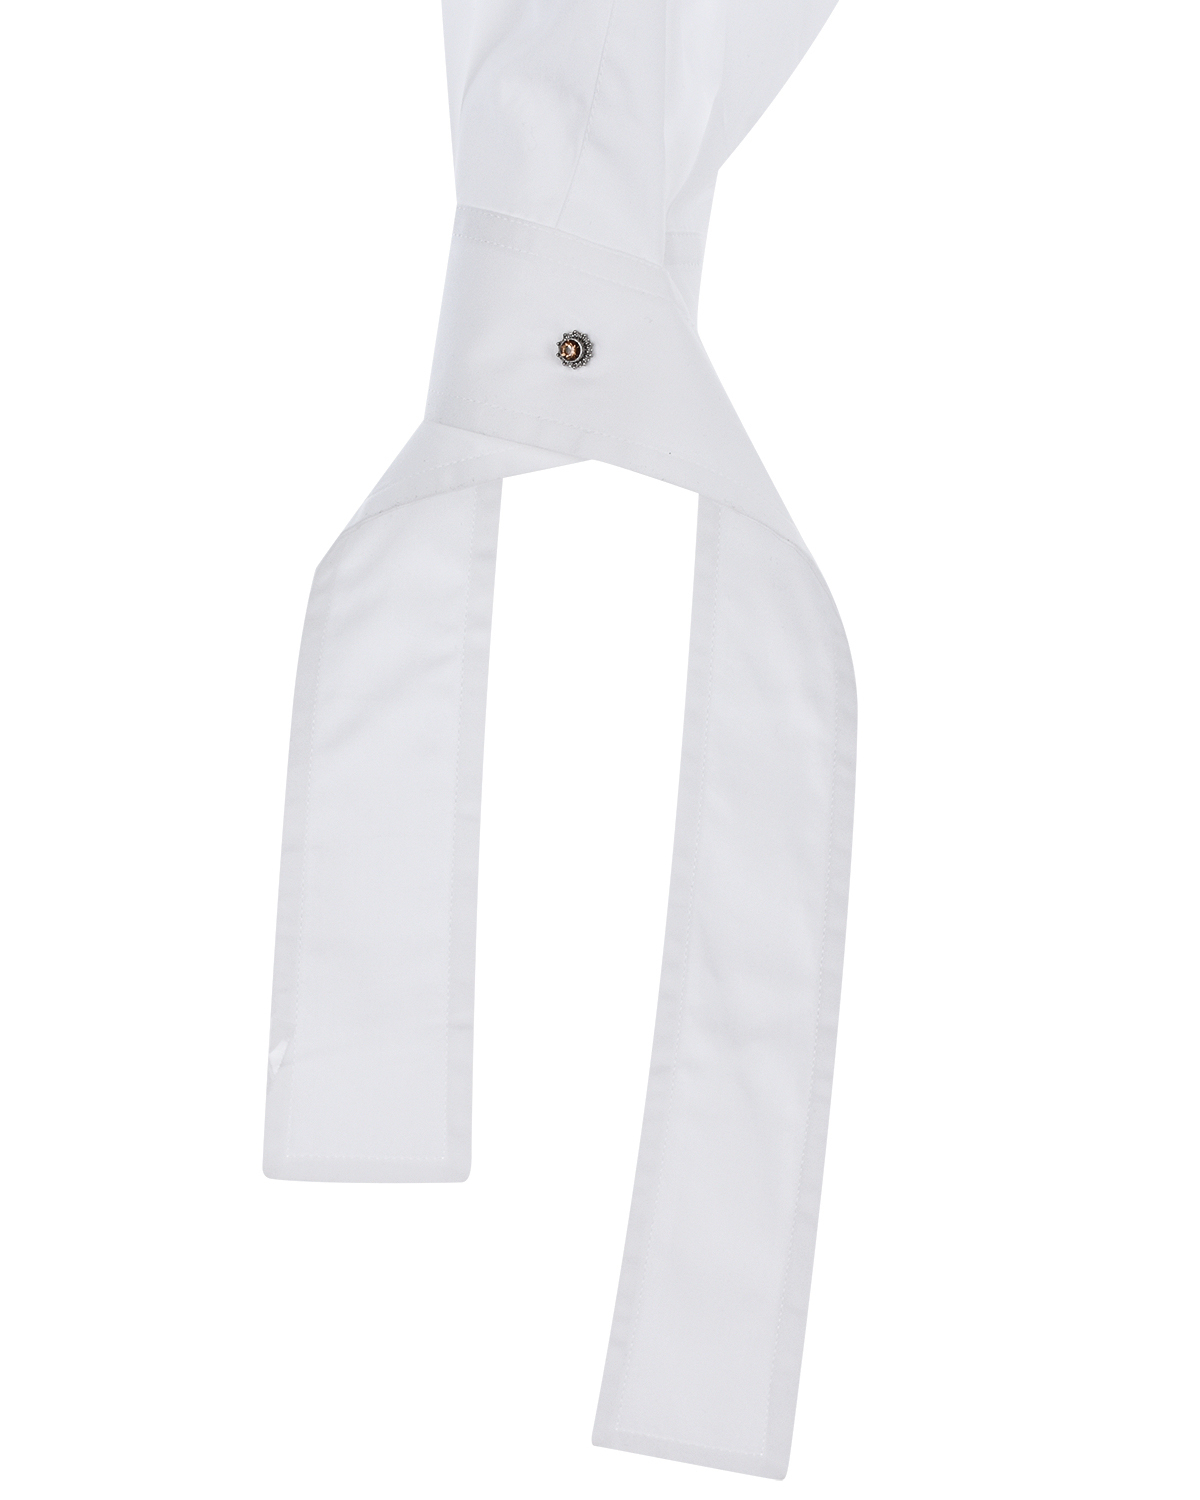 Удлиненная белая рубашка No. 21, размер 42, цвет белый - фото 11